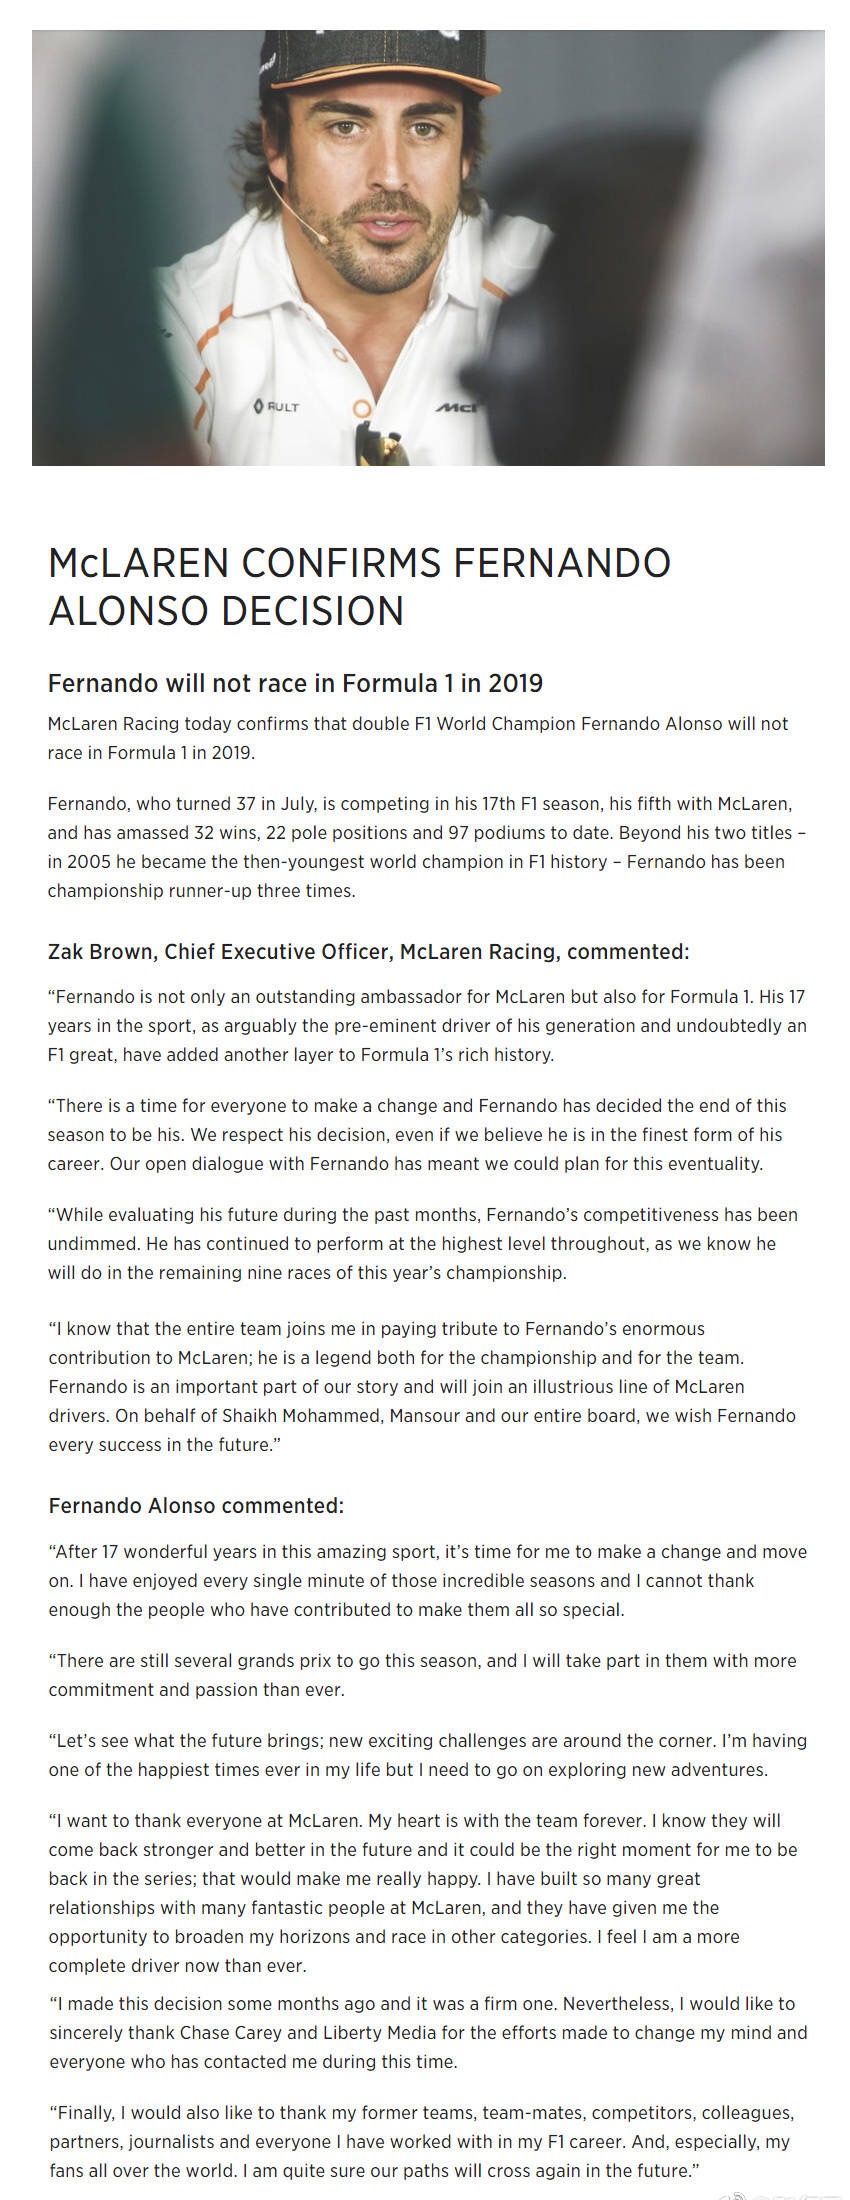 段子手终迎告别 阿隆索将不再参加2019年F1